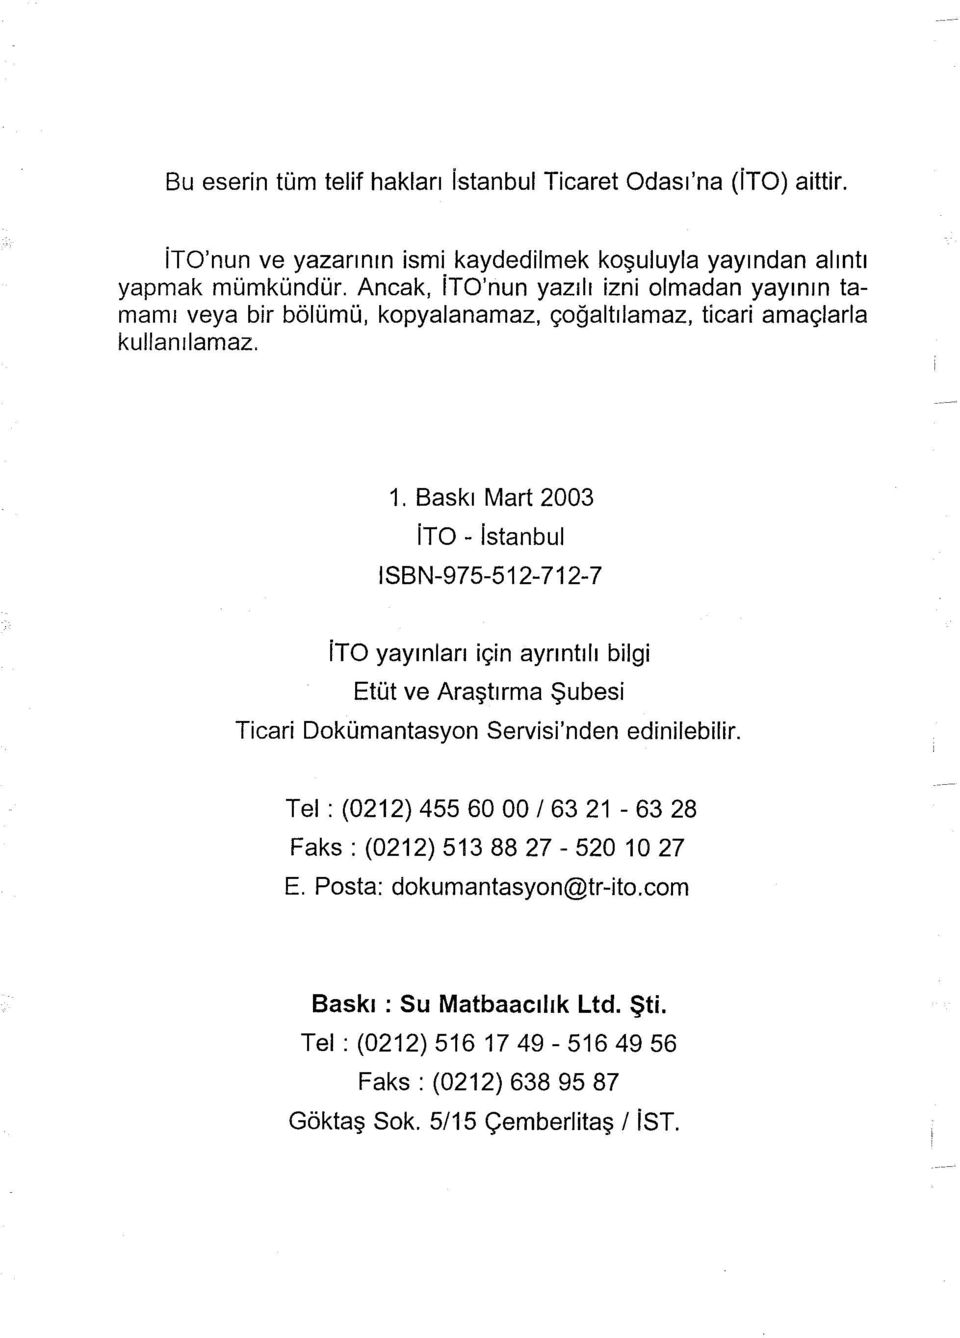 Baskı Mart 2003 ito - istanbul ISBN-975-512-712-7 ito yayınları için ayrıntılı bilgi Etüt ve Araştırma Şubesi Ticari Dokümantasyon Servisi'nden edinilebilir.